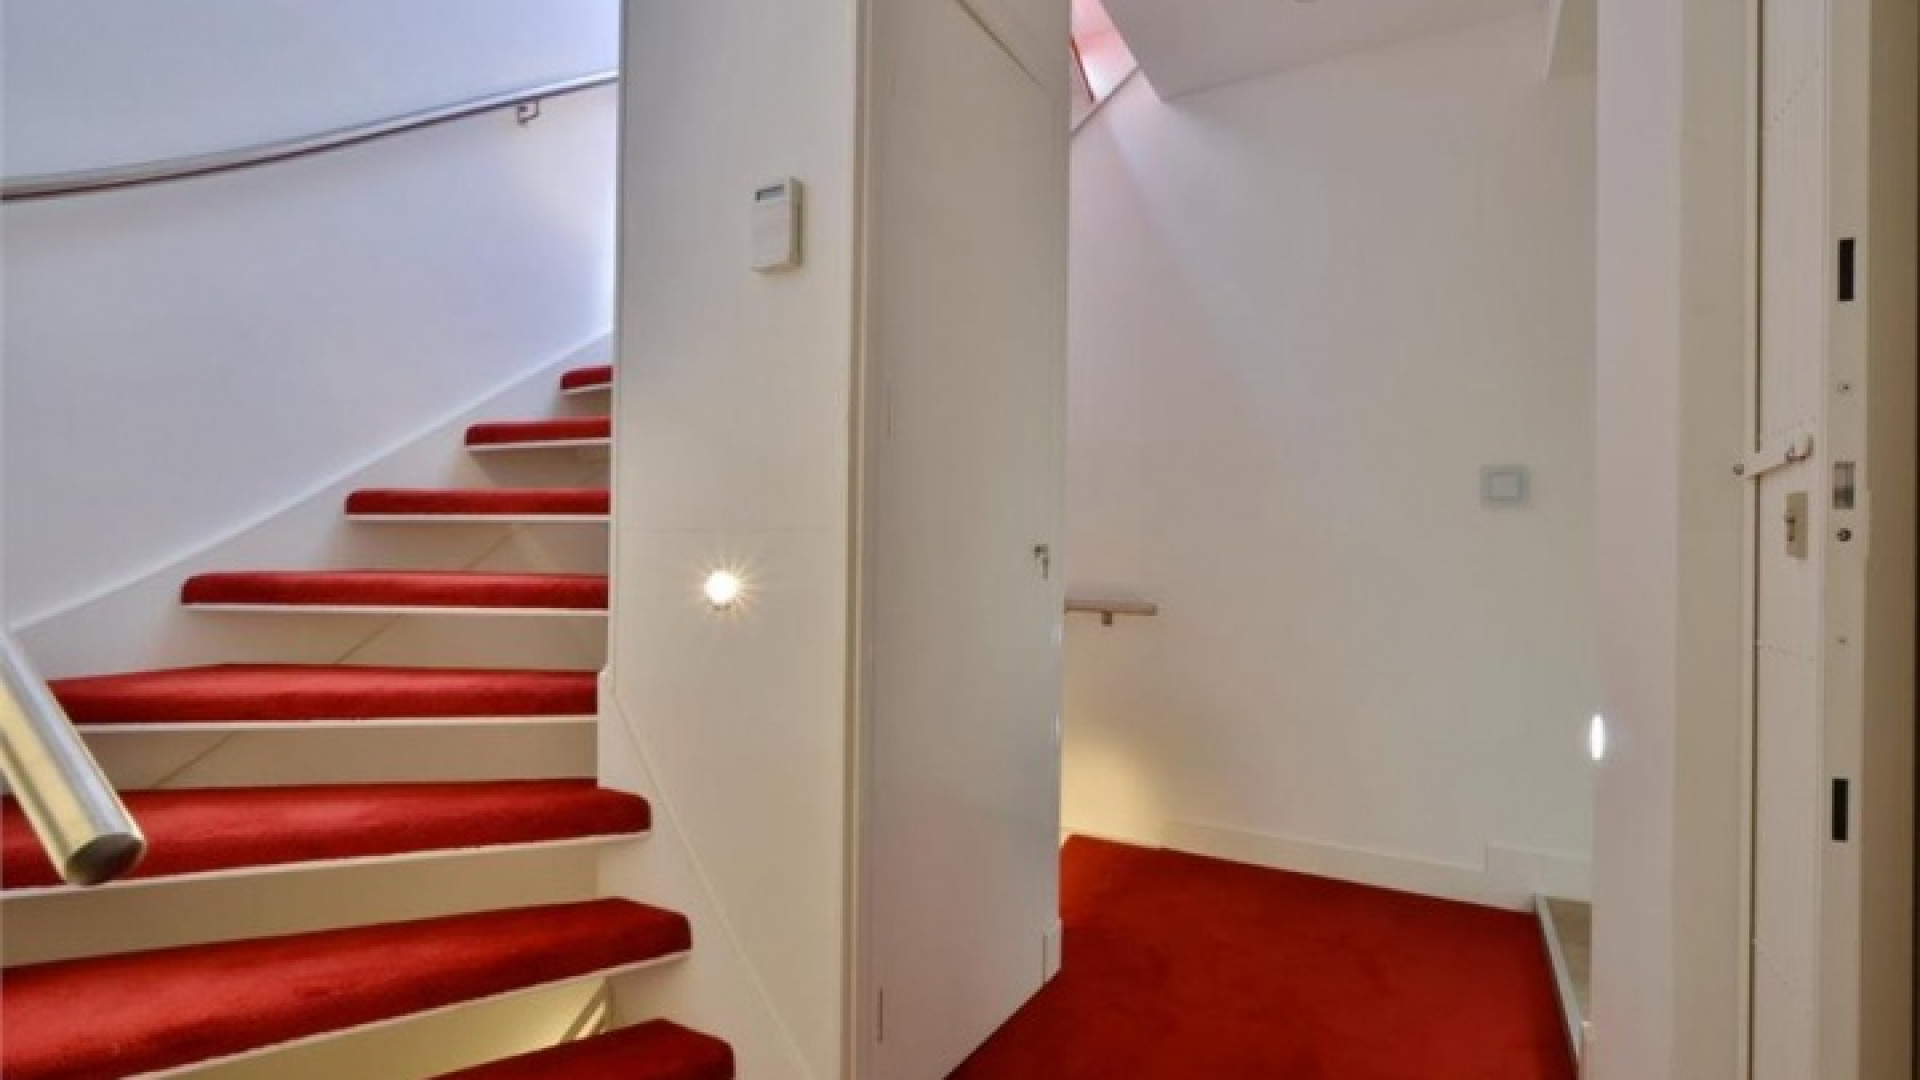 Frank Rijkaard zoekt huurder voor zijn luxe dubbele bovenhuis. Zie foto's 15